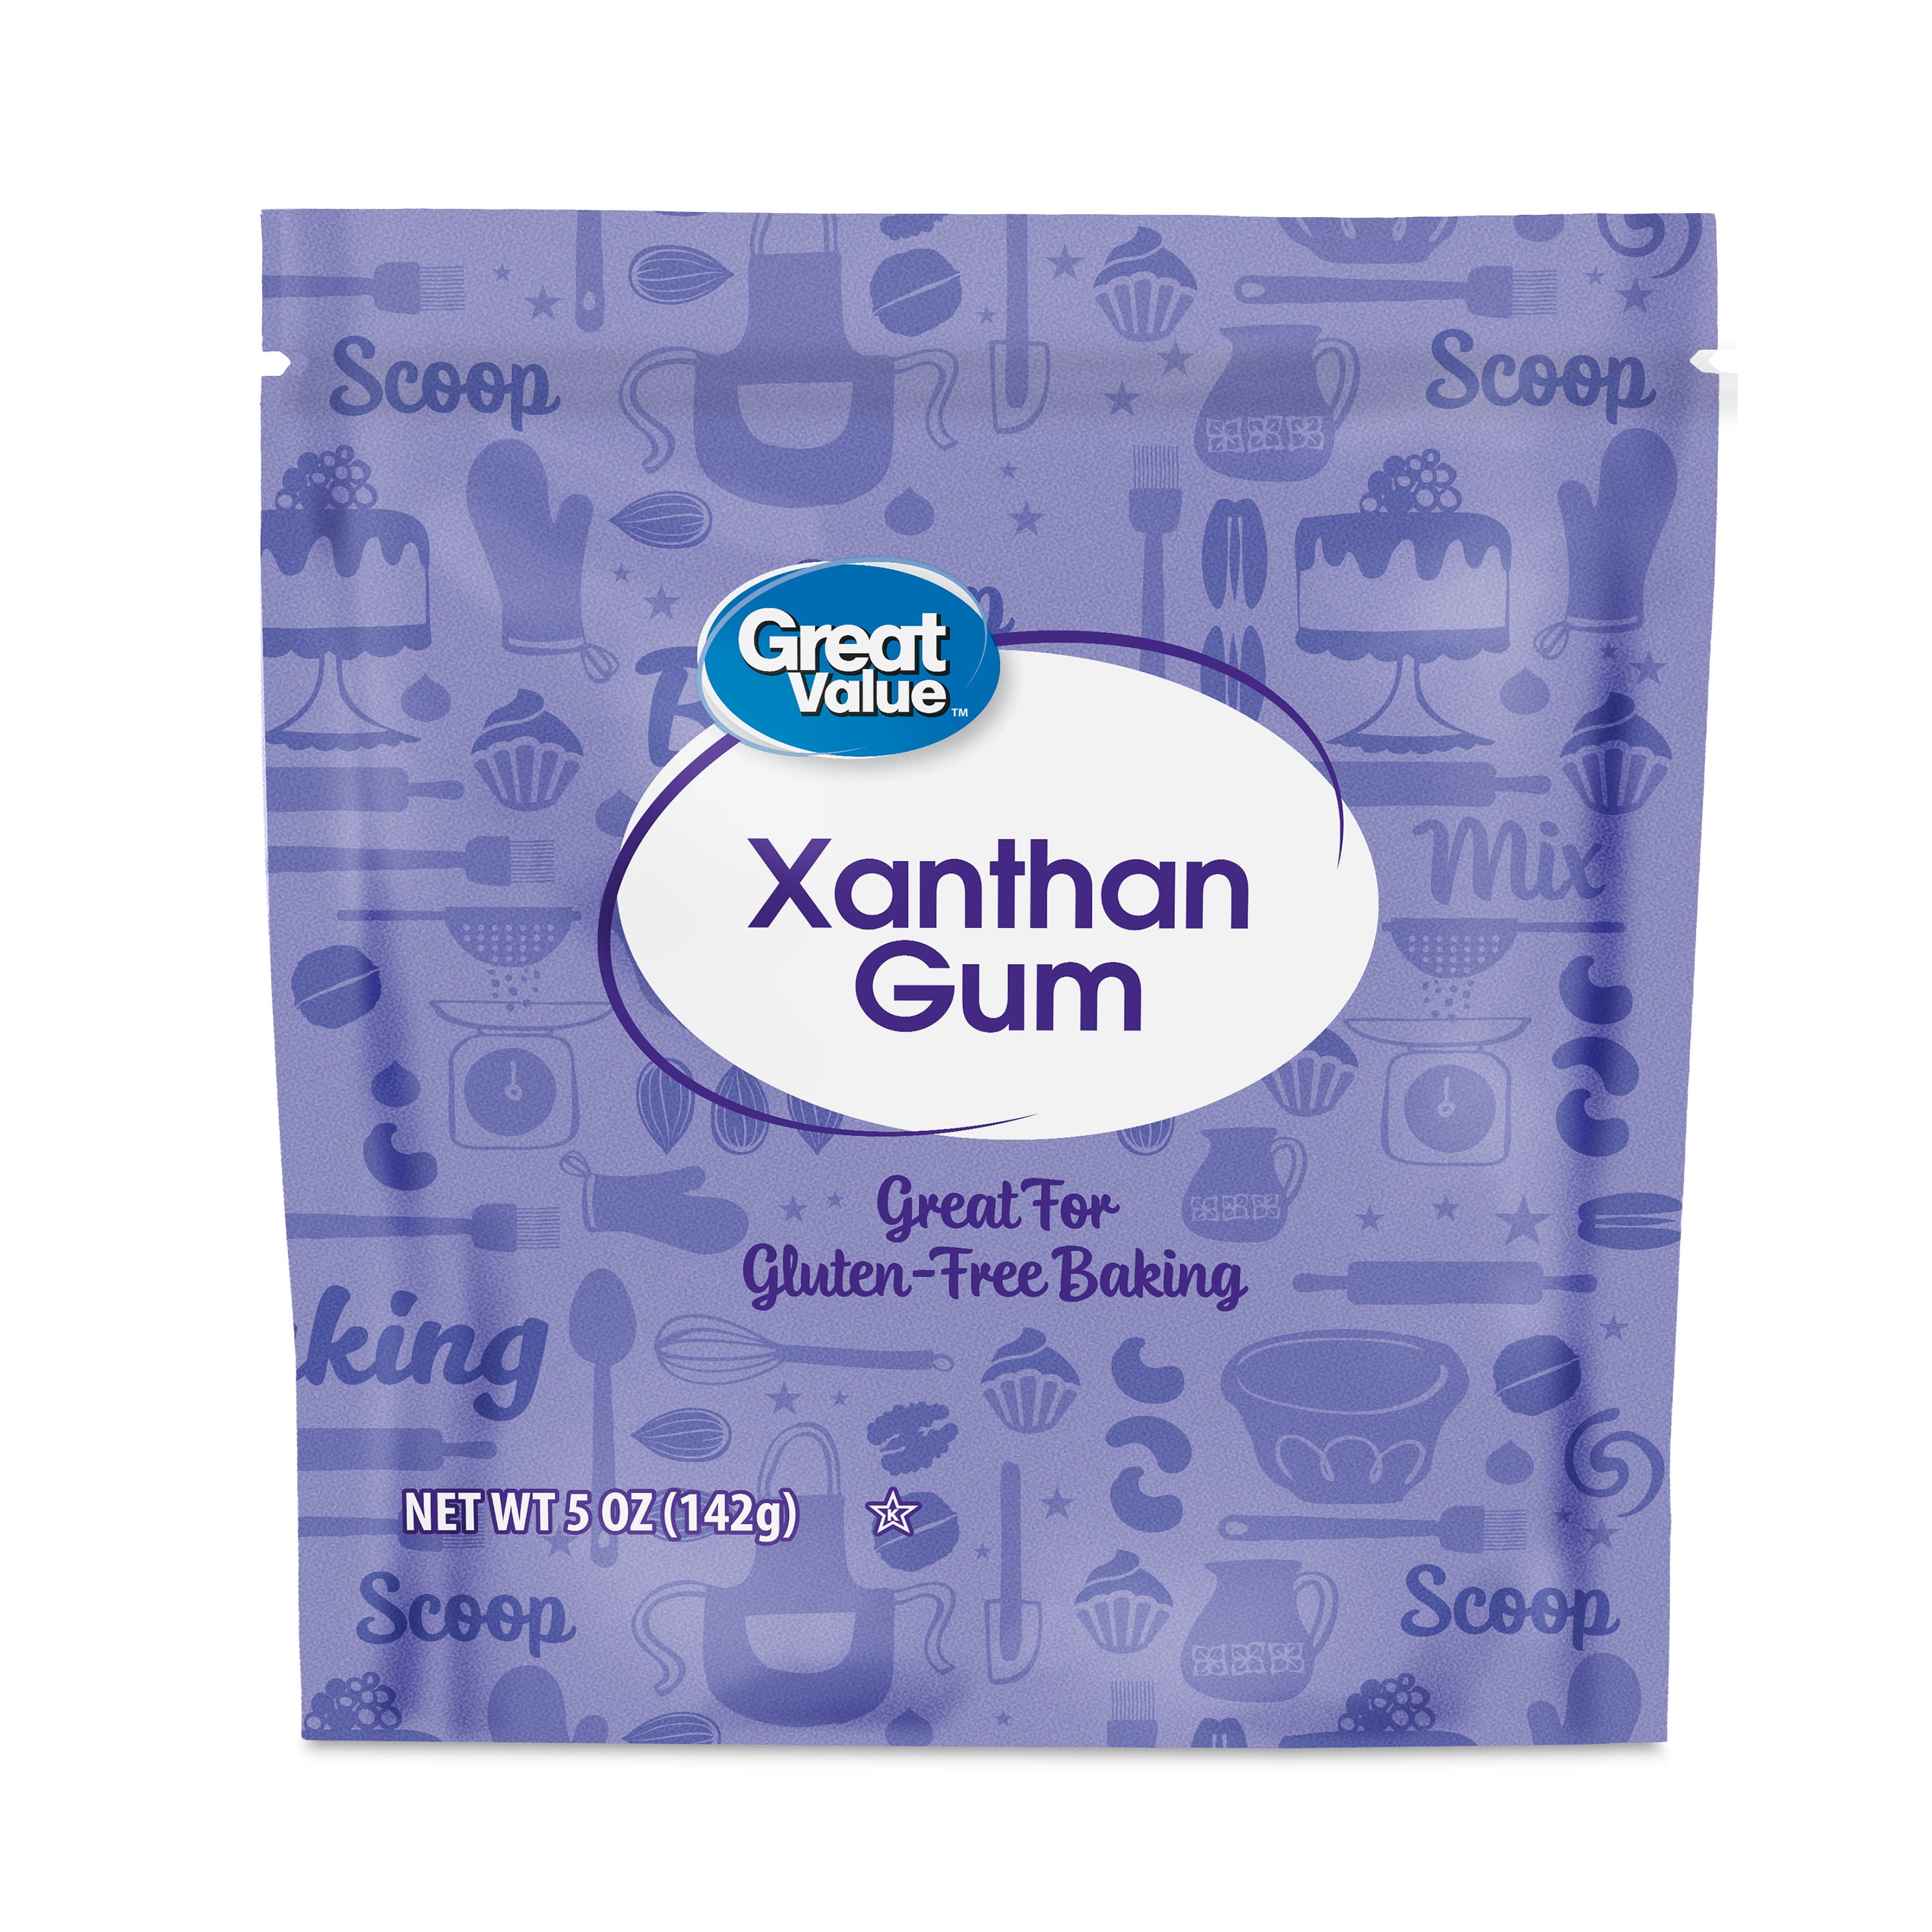 10 Best Xanthan Gum Substitutes in Gluten-Free Baking - Zest for